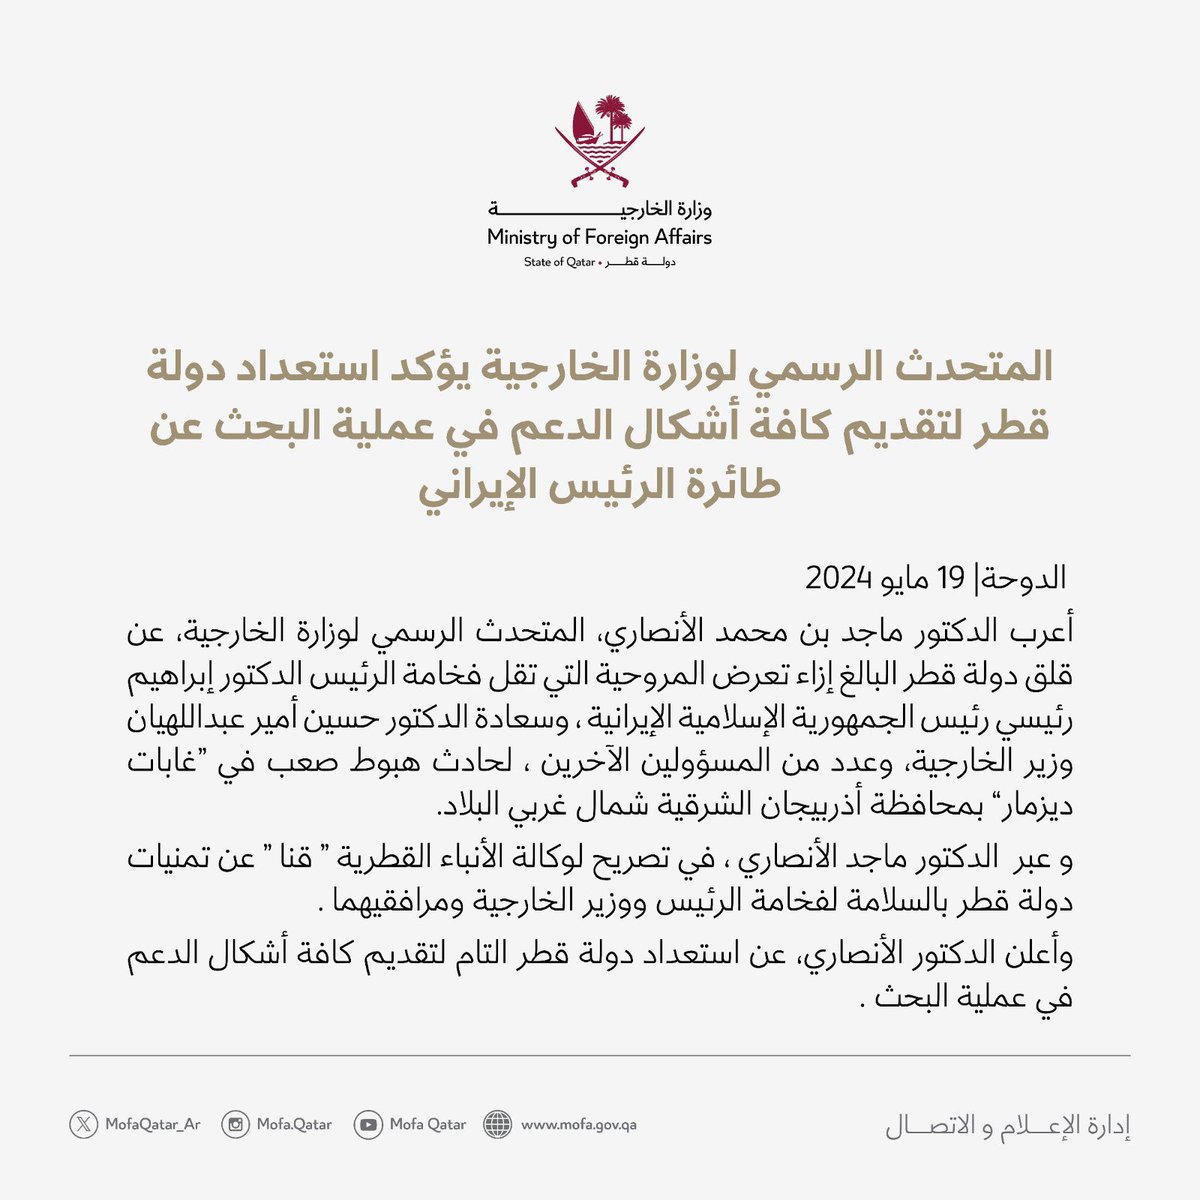 المتحدث الرسمي لوزارة الخارجية @majedalansari يؤكد استعداد دولة قطر لتقديم كافة أشكال الدعم في عملية البحث عن طائرة الرئيس الإيراني #الخارجية_القطرية